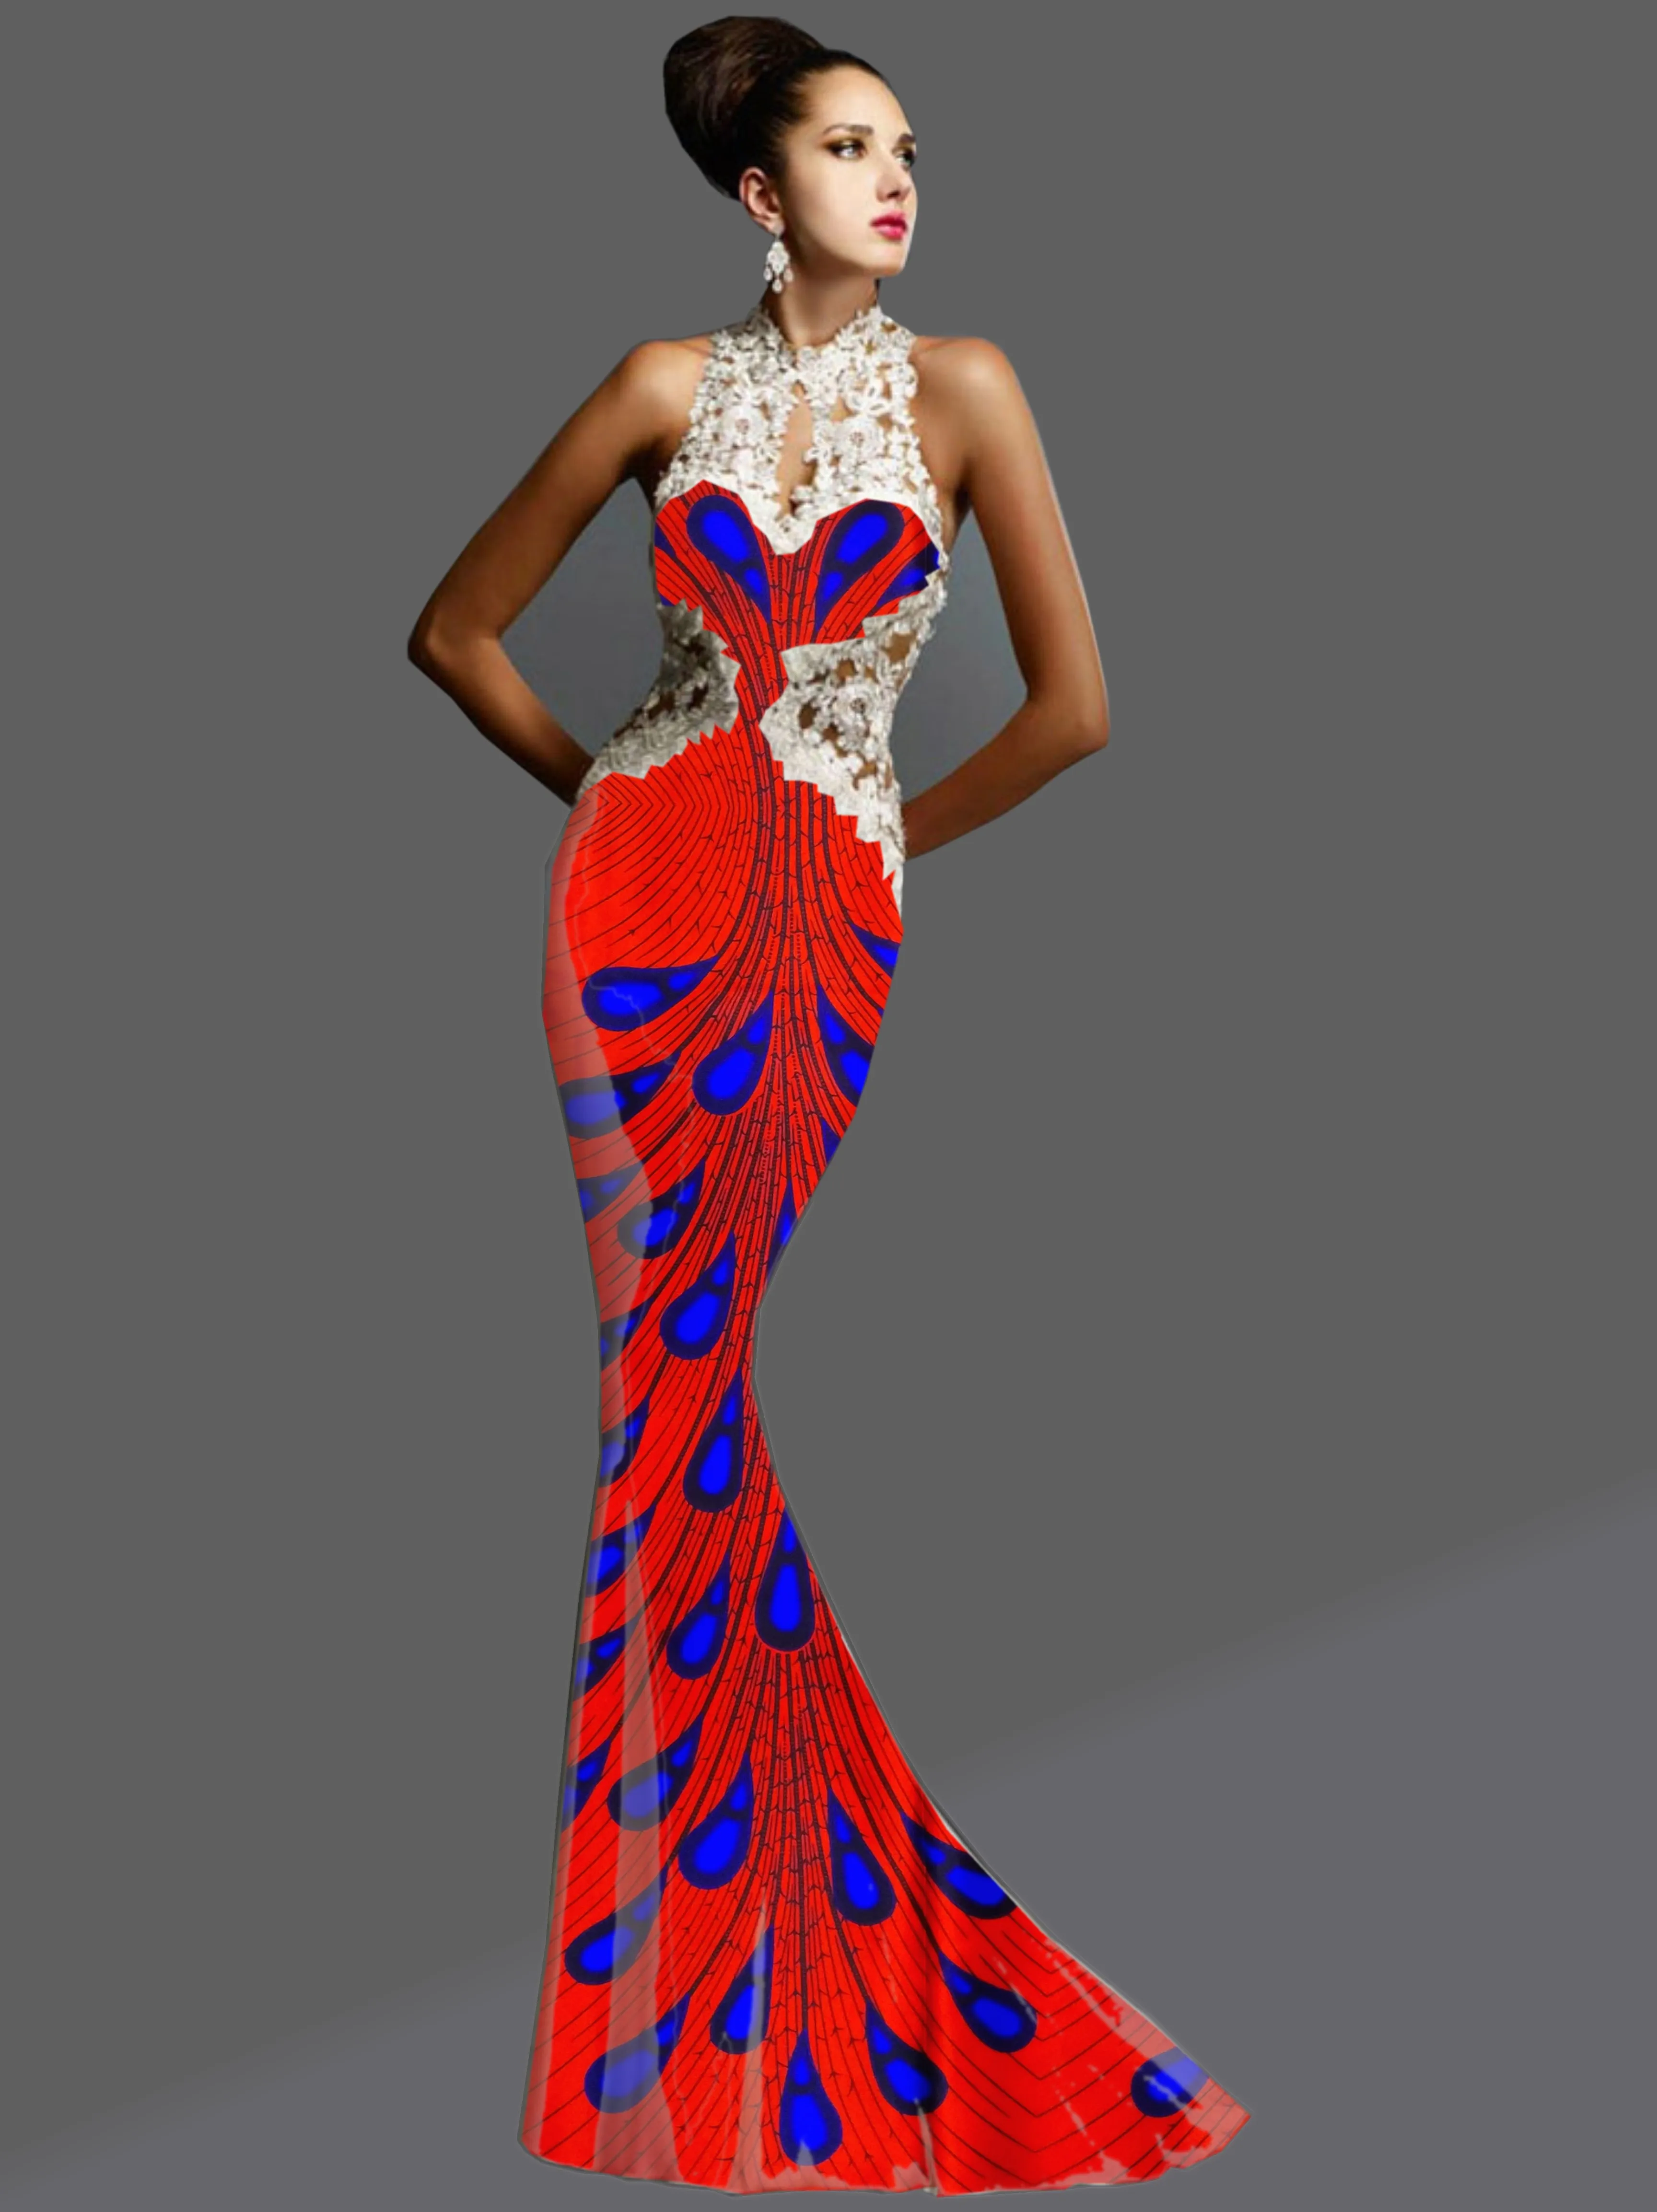 LIULANZHI африканская ткань белая атласная ткань с синим узором Дизайн Новое поступление африканская атласная ткань для платья XDA01